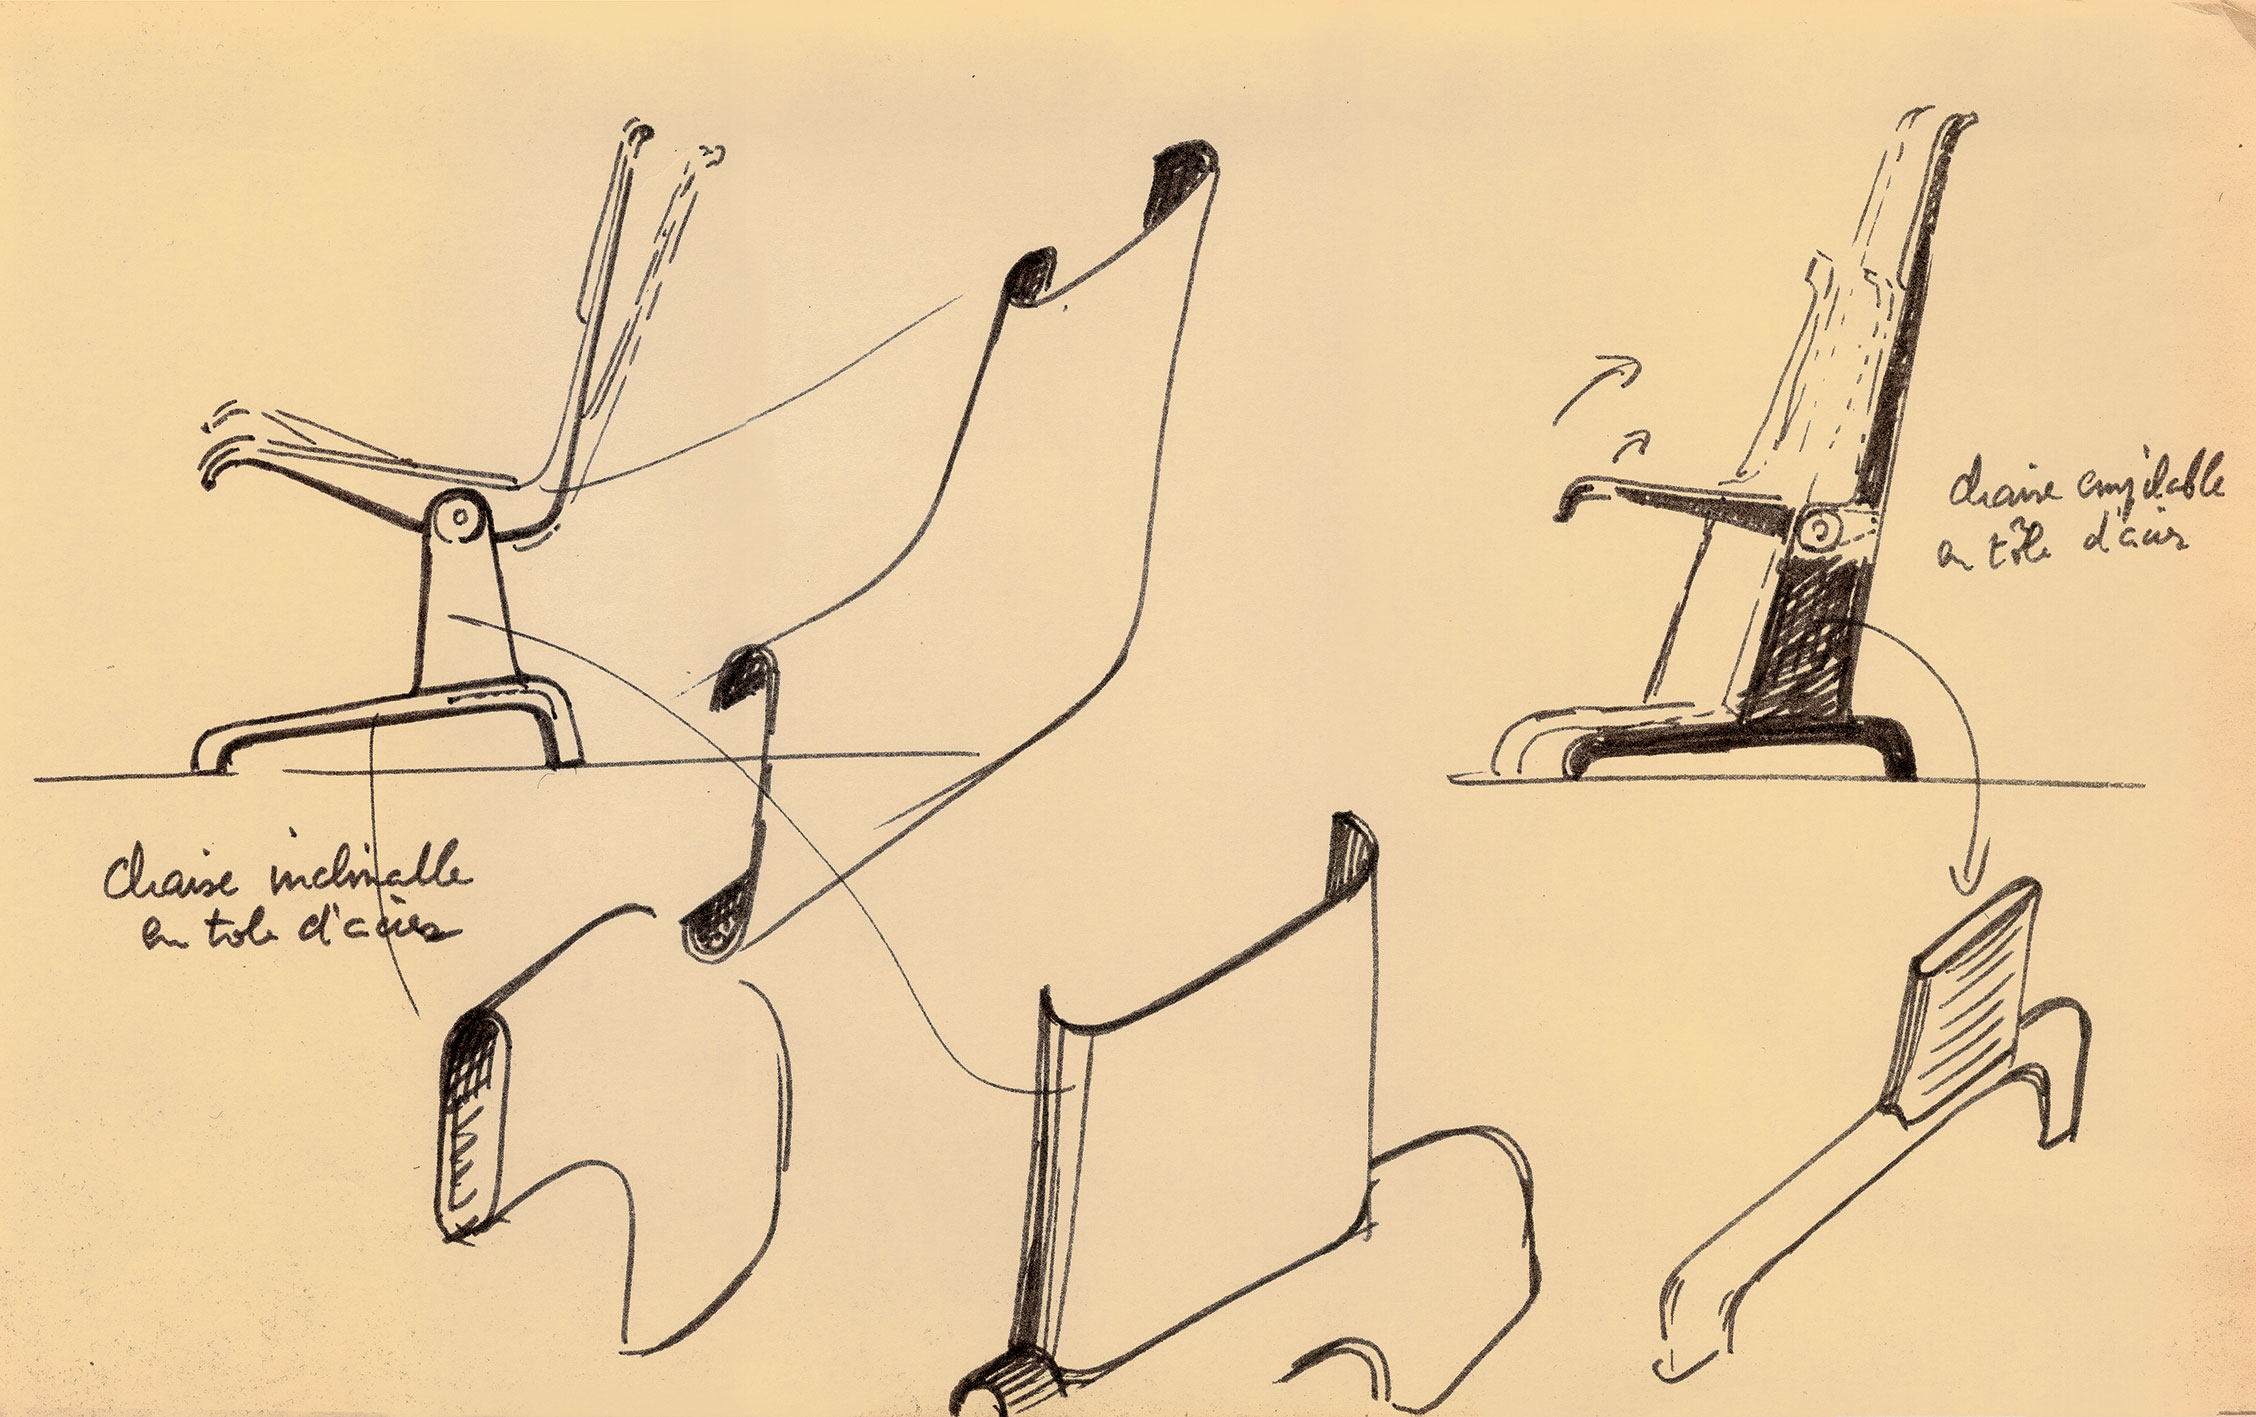 « Chaise inclinable en tôle d’acier. Chaise empilable en tôle d’acier ». Croquis de Jean Prouvé pour la revue <i>Intérieur,</i> 1965.